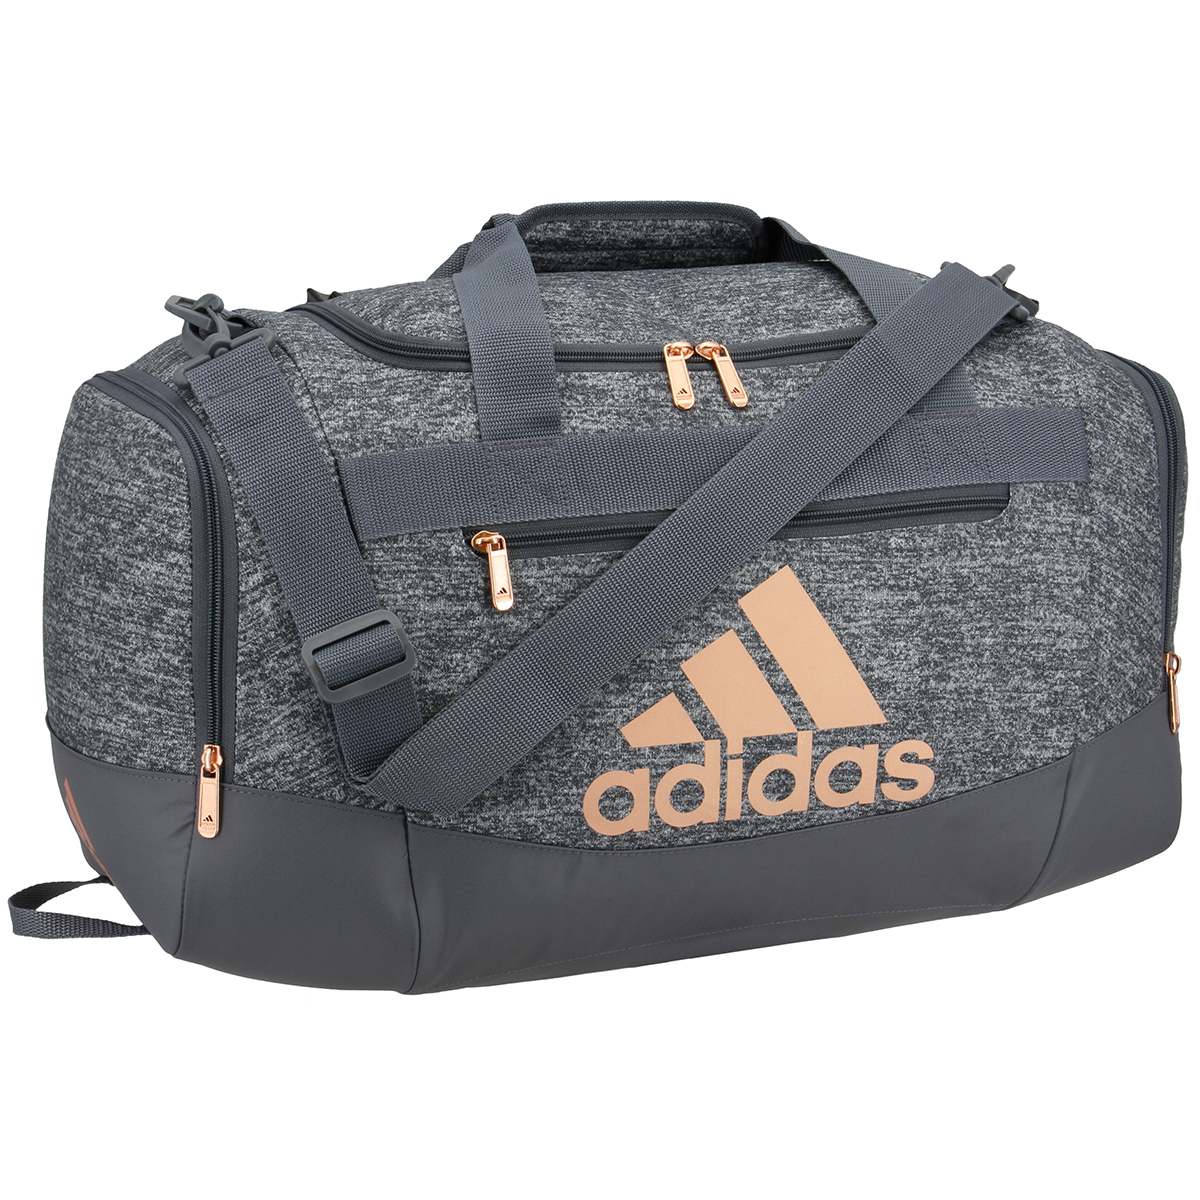 Adidas Defender Iv Small Duffle Bag, Black